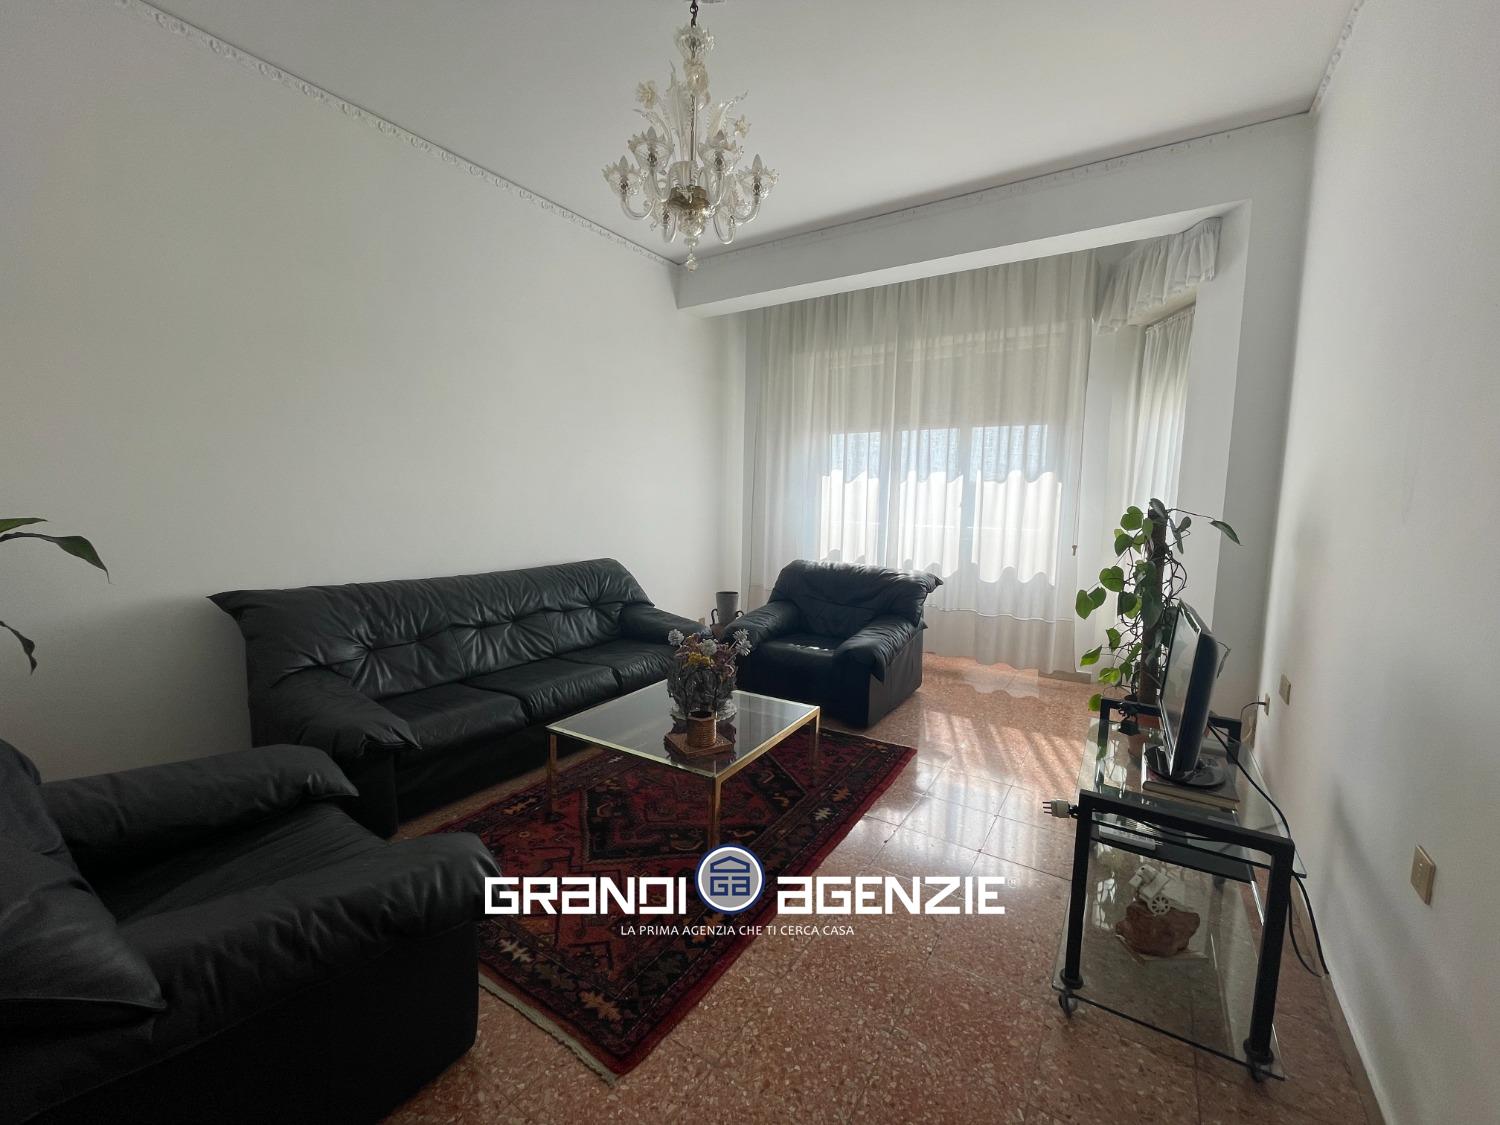 Appartamento in vendita a Treviso, 4 locali, prezzo € 119.000 | PortaleAgenzieImmobiliari.it